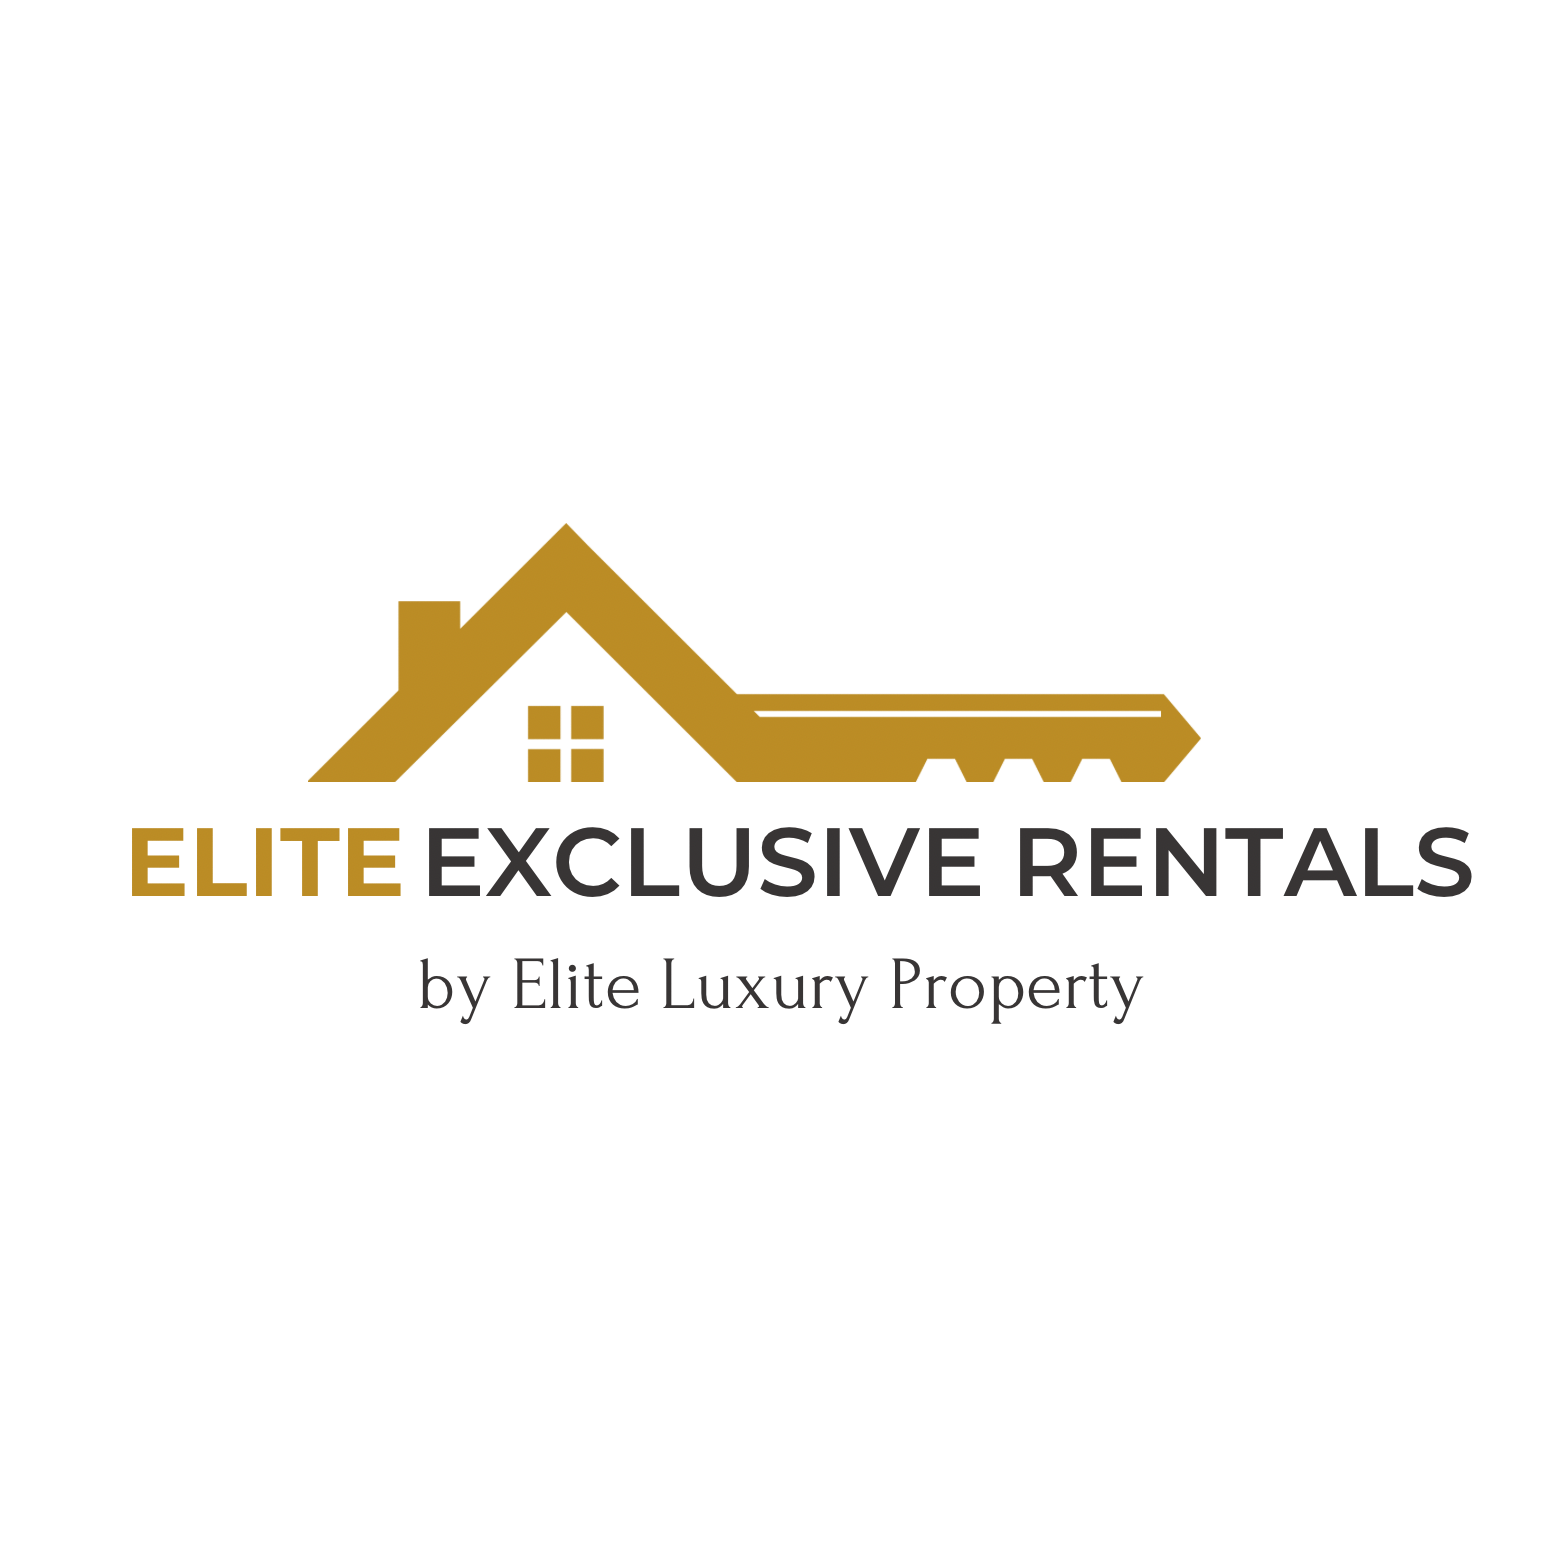 Elite Exclusive Rentals